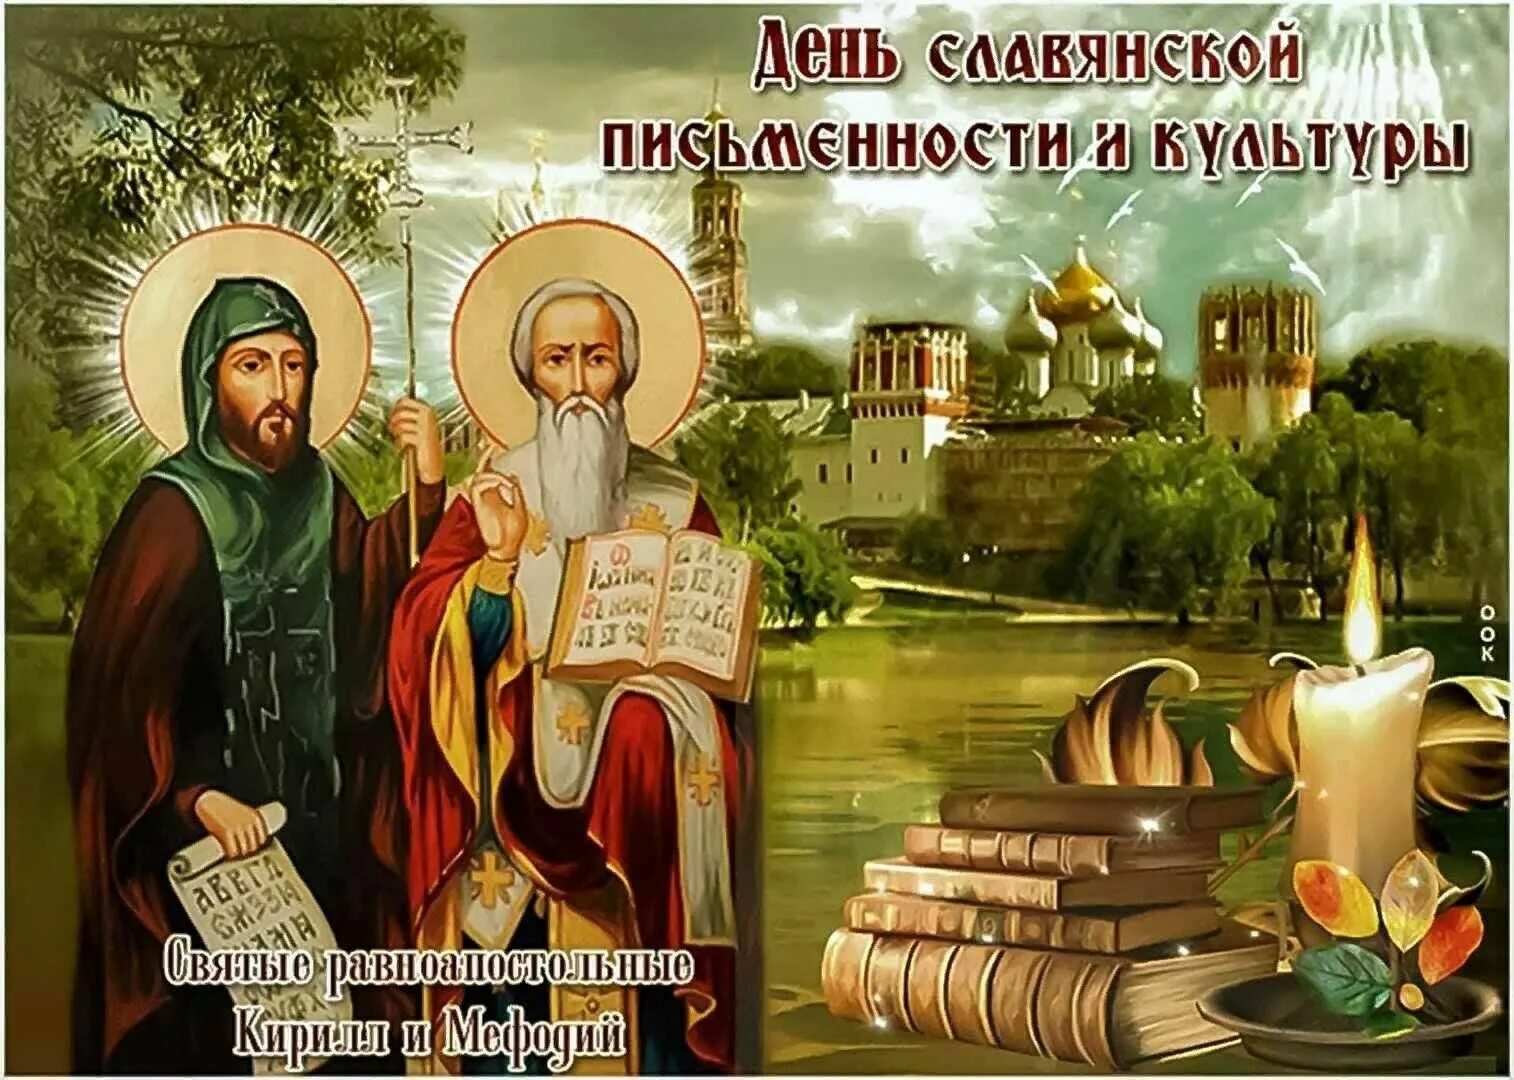 24 мая 19 года. 24 Мая день славянской письменности и культуры. День старославянской письменности и культуры.